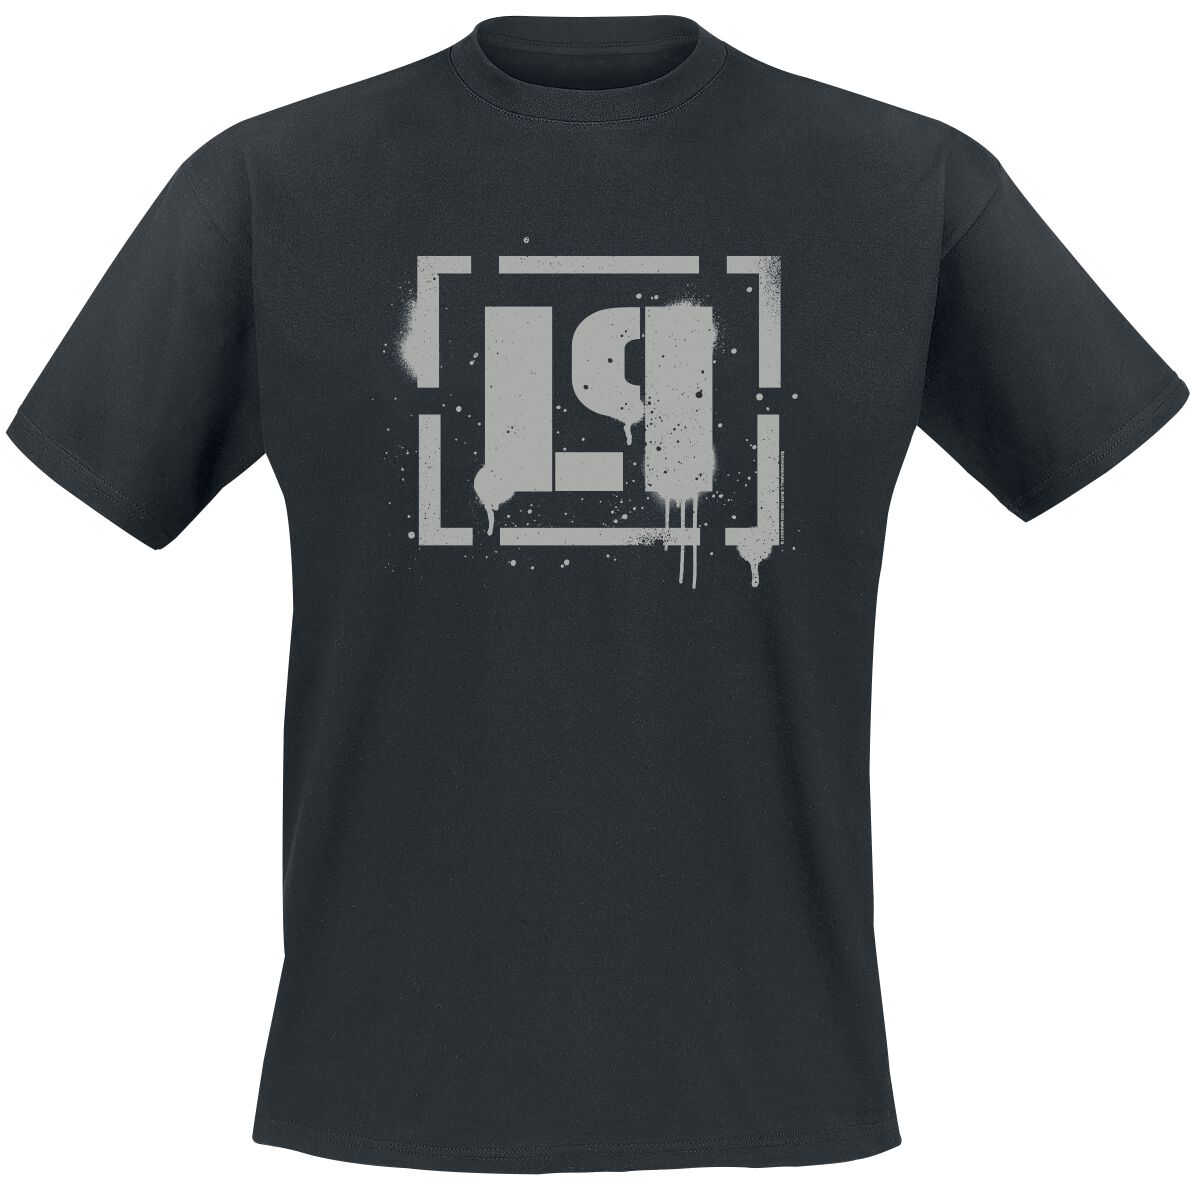 Linkin Park T-Shirt - Meteora Bracket Spray Logo - S bis 4XL - für Männer - Größe 3XL - schwarz  - Lizenziertes Merchandise!